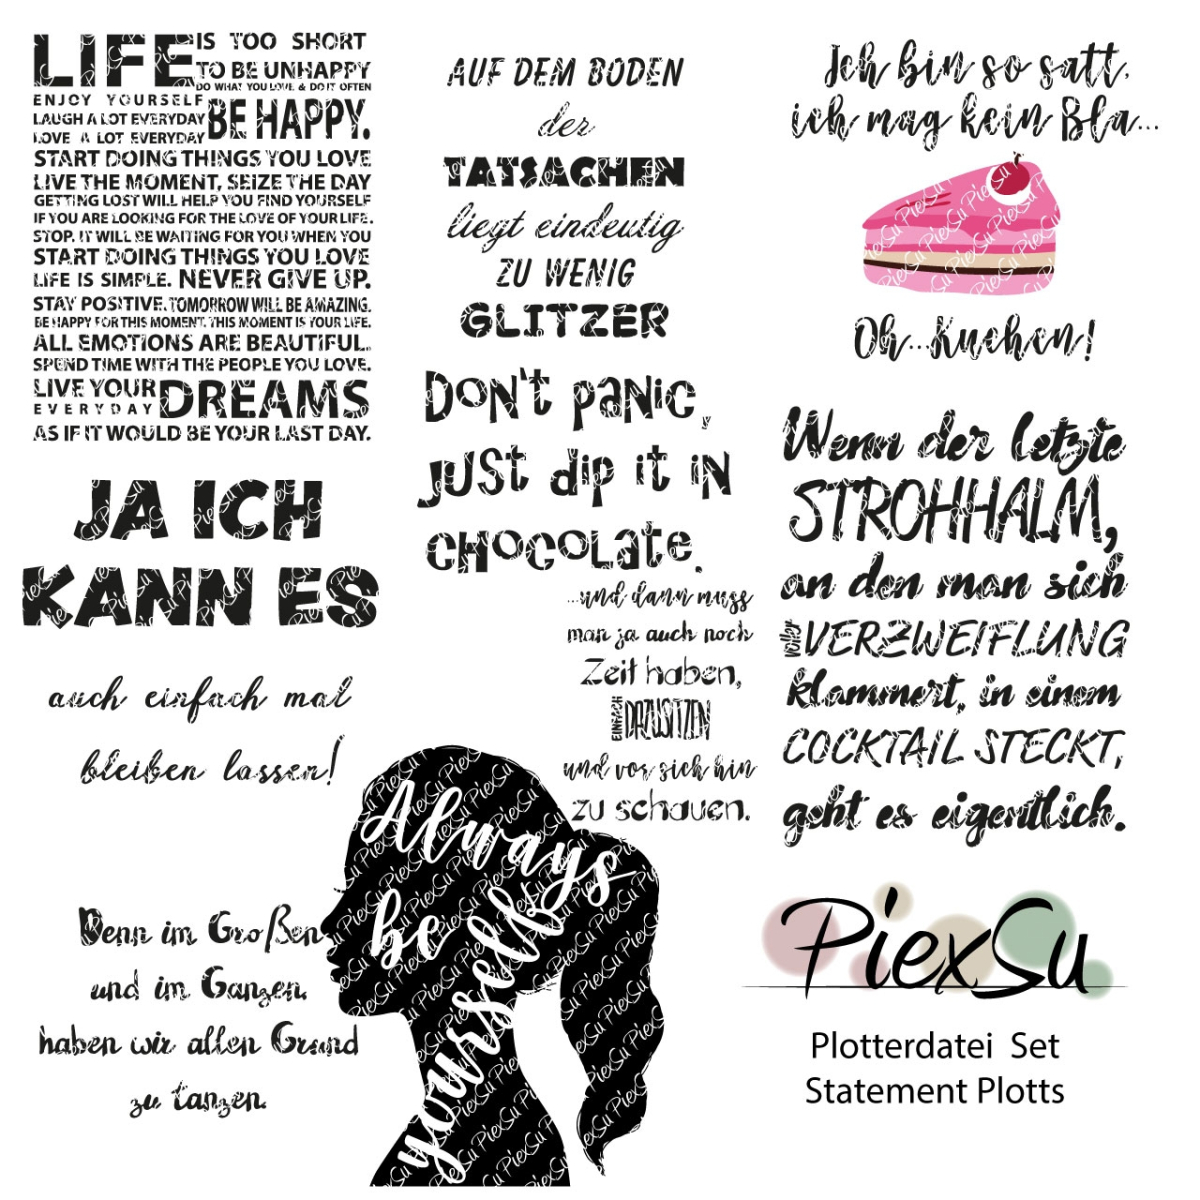 Fichier dessin flocage Kit Tournure de phrase PiexSu